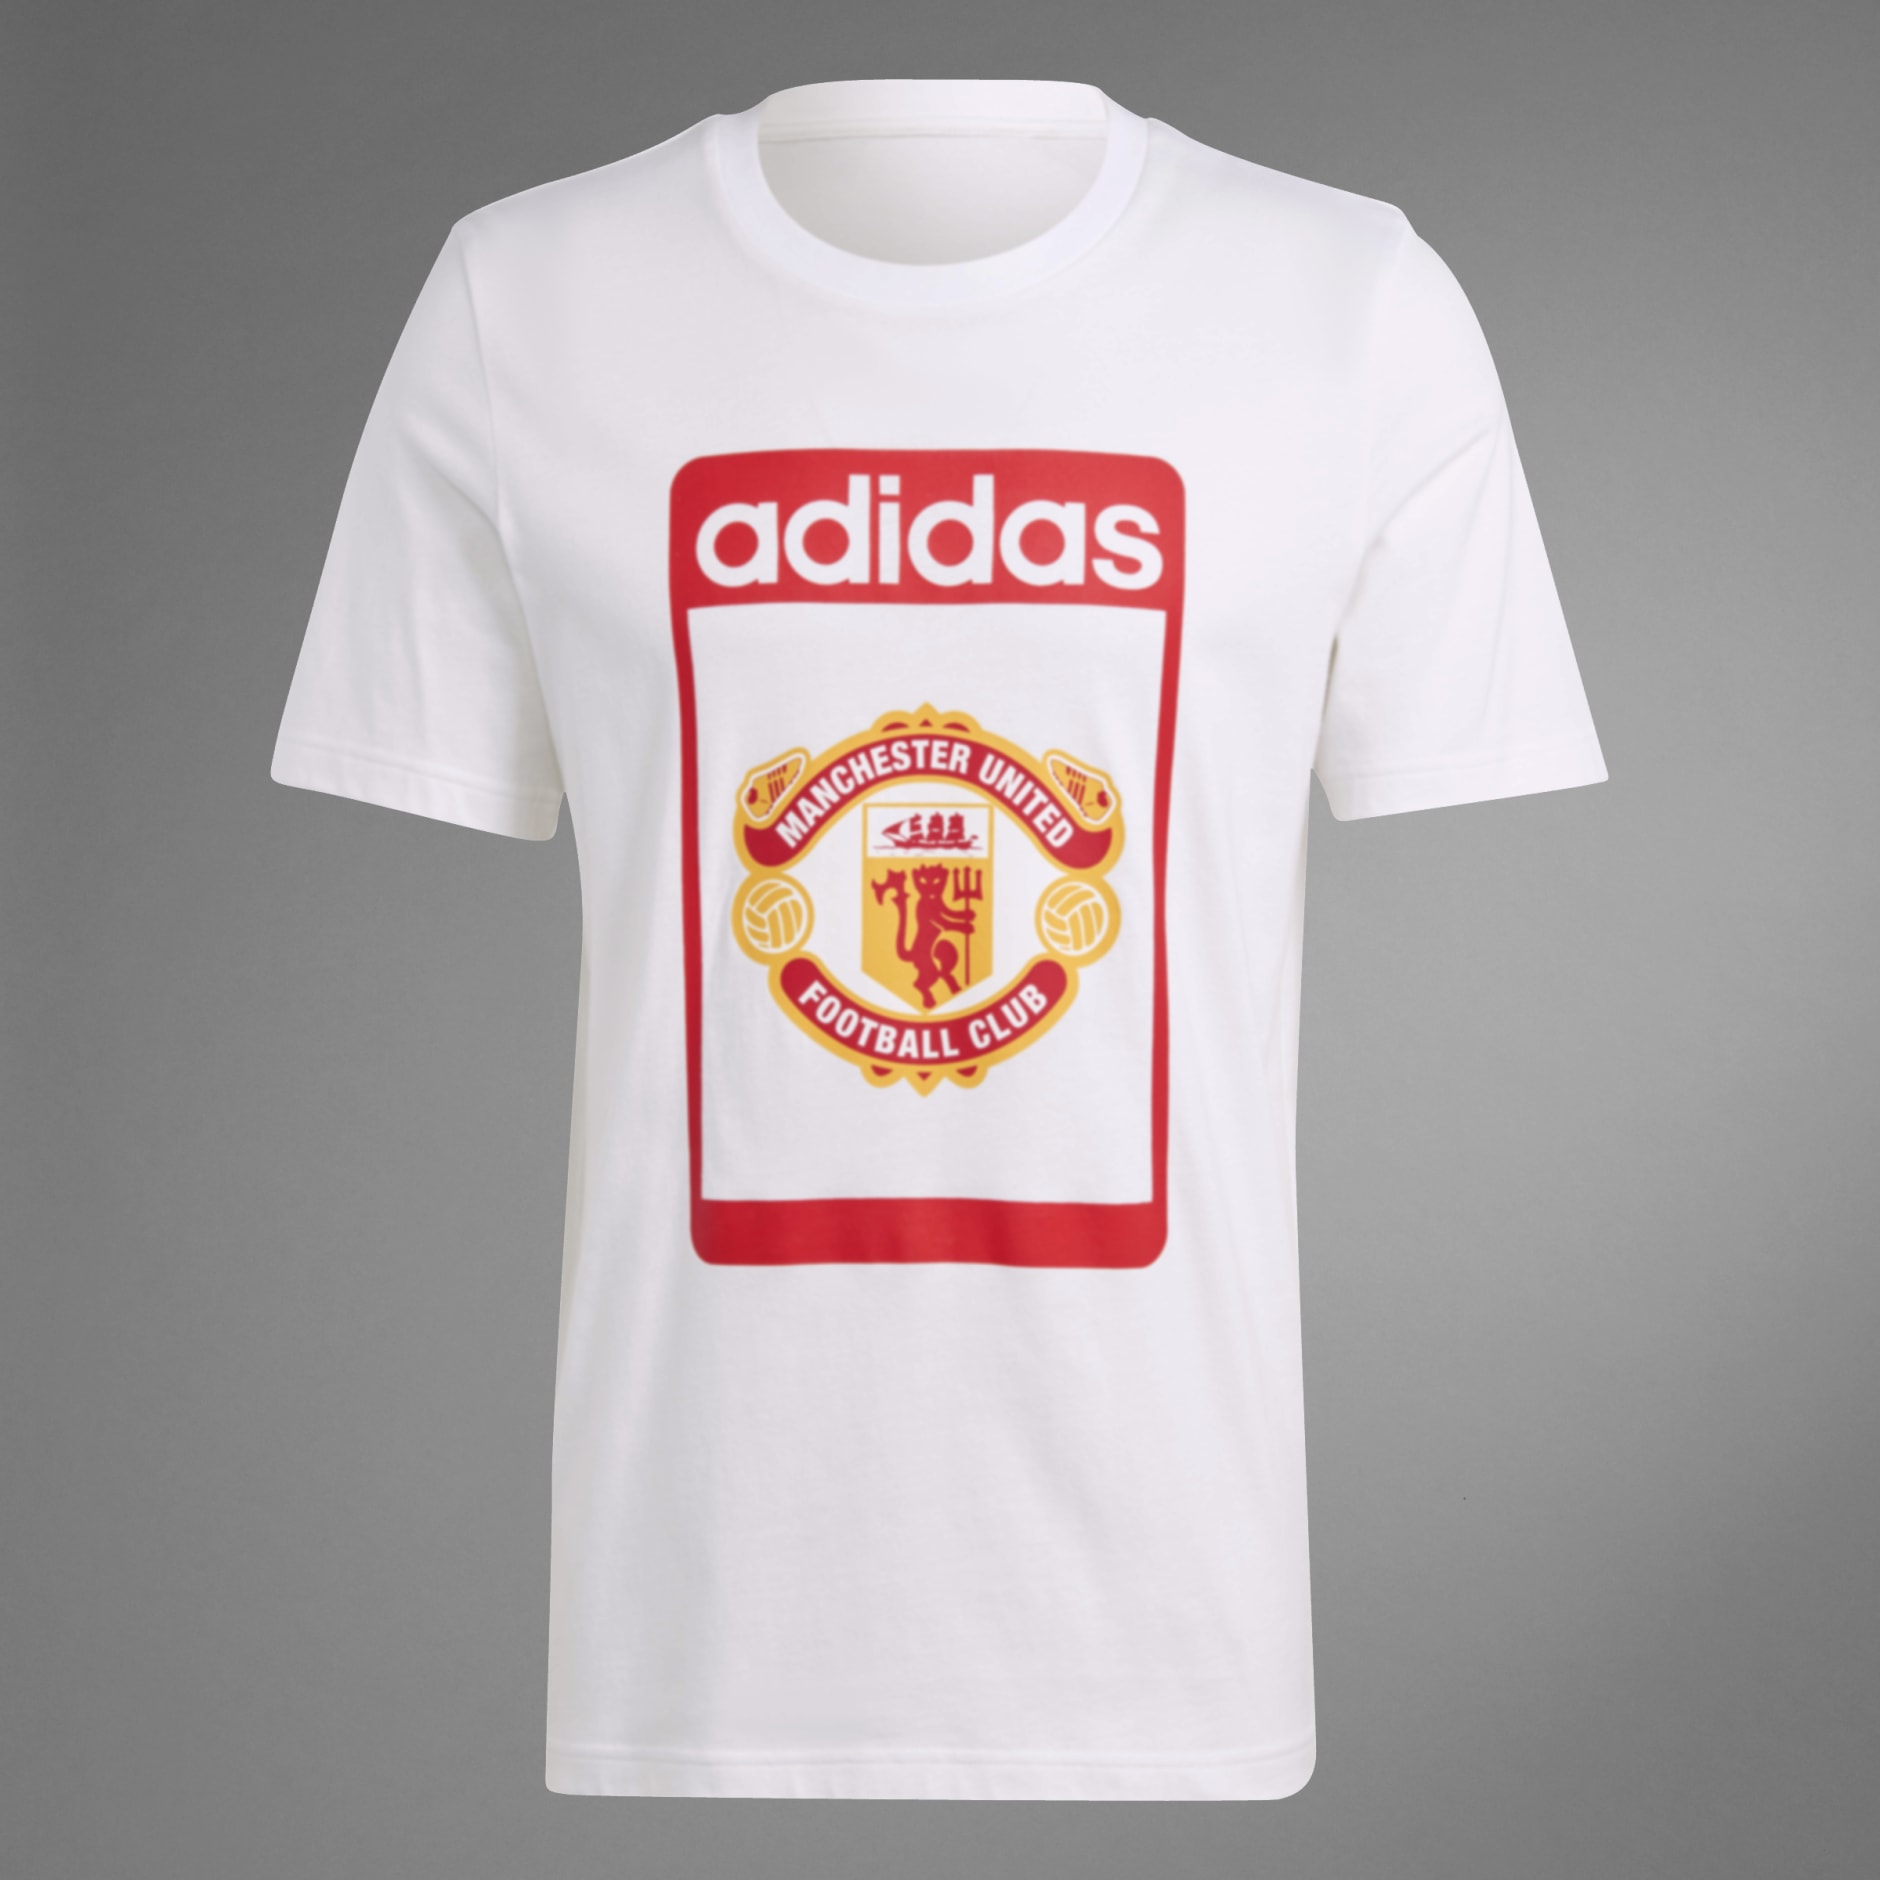 Adidas Originals Manchester United Retro Graphic Tee - White